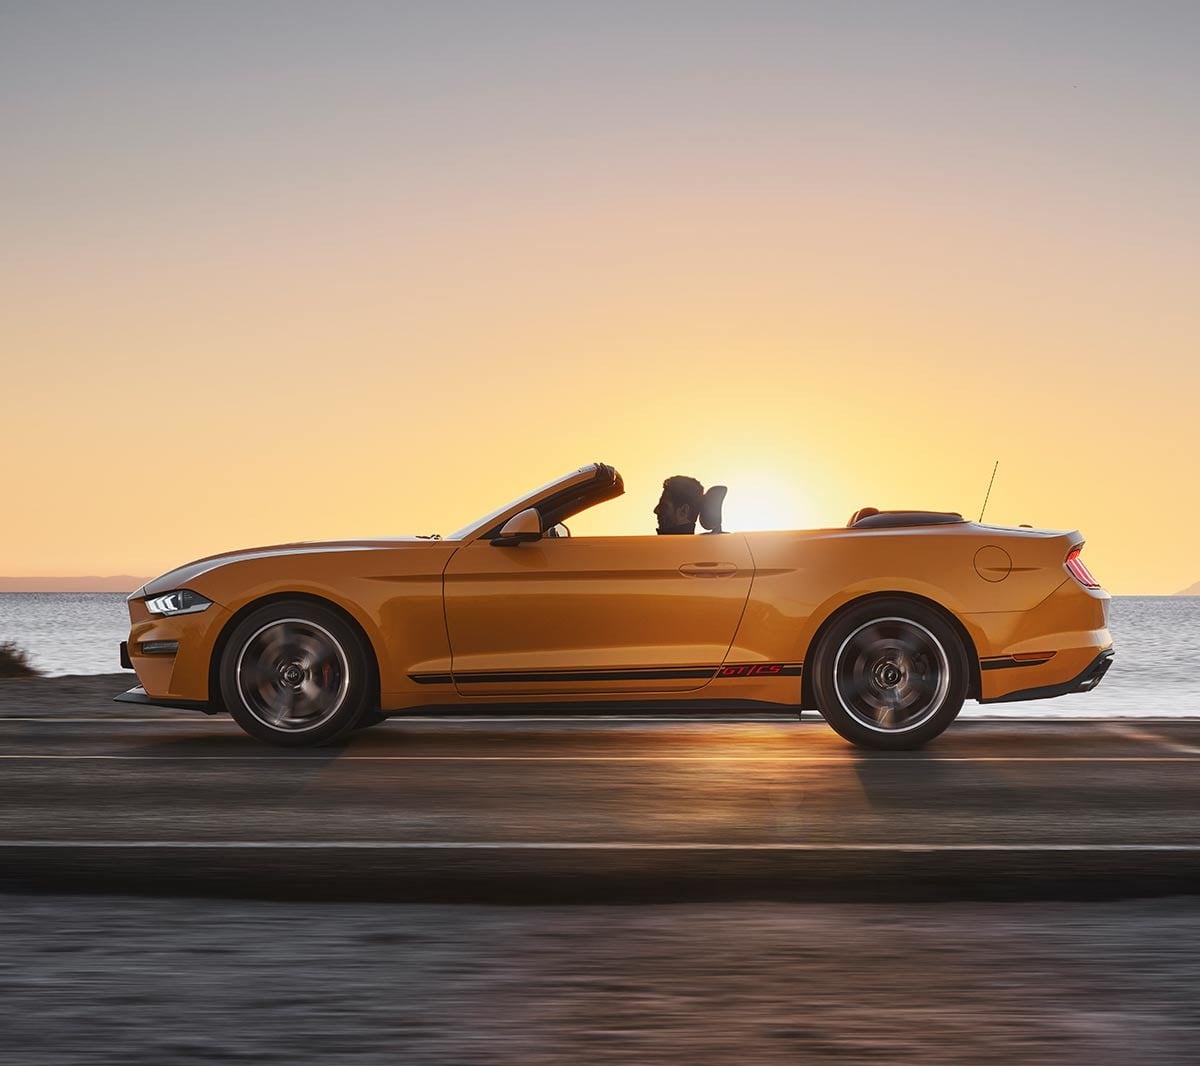 Ford Mustang California arancione. Vista laterale, in marcia nella natura al tramonto.